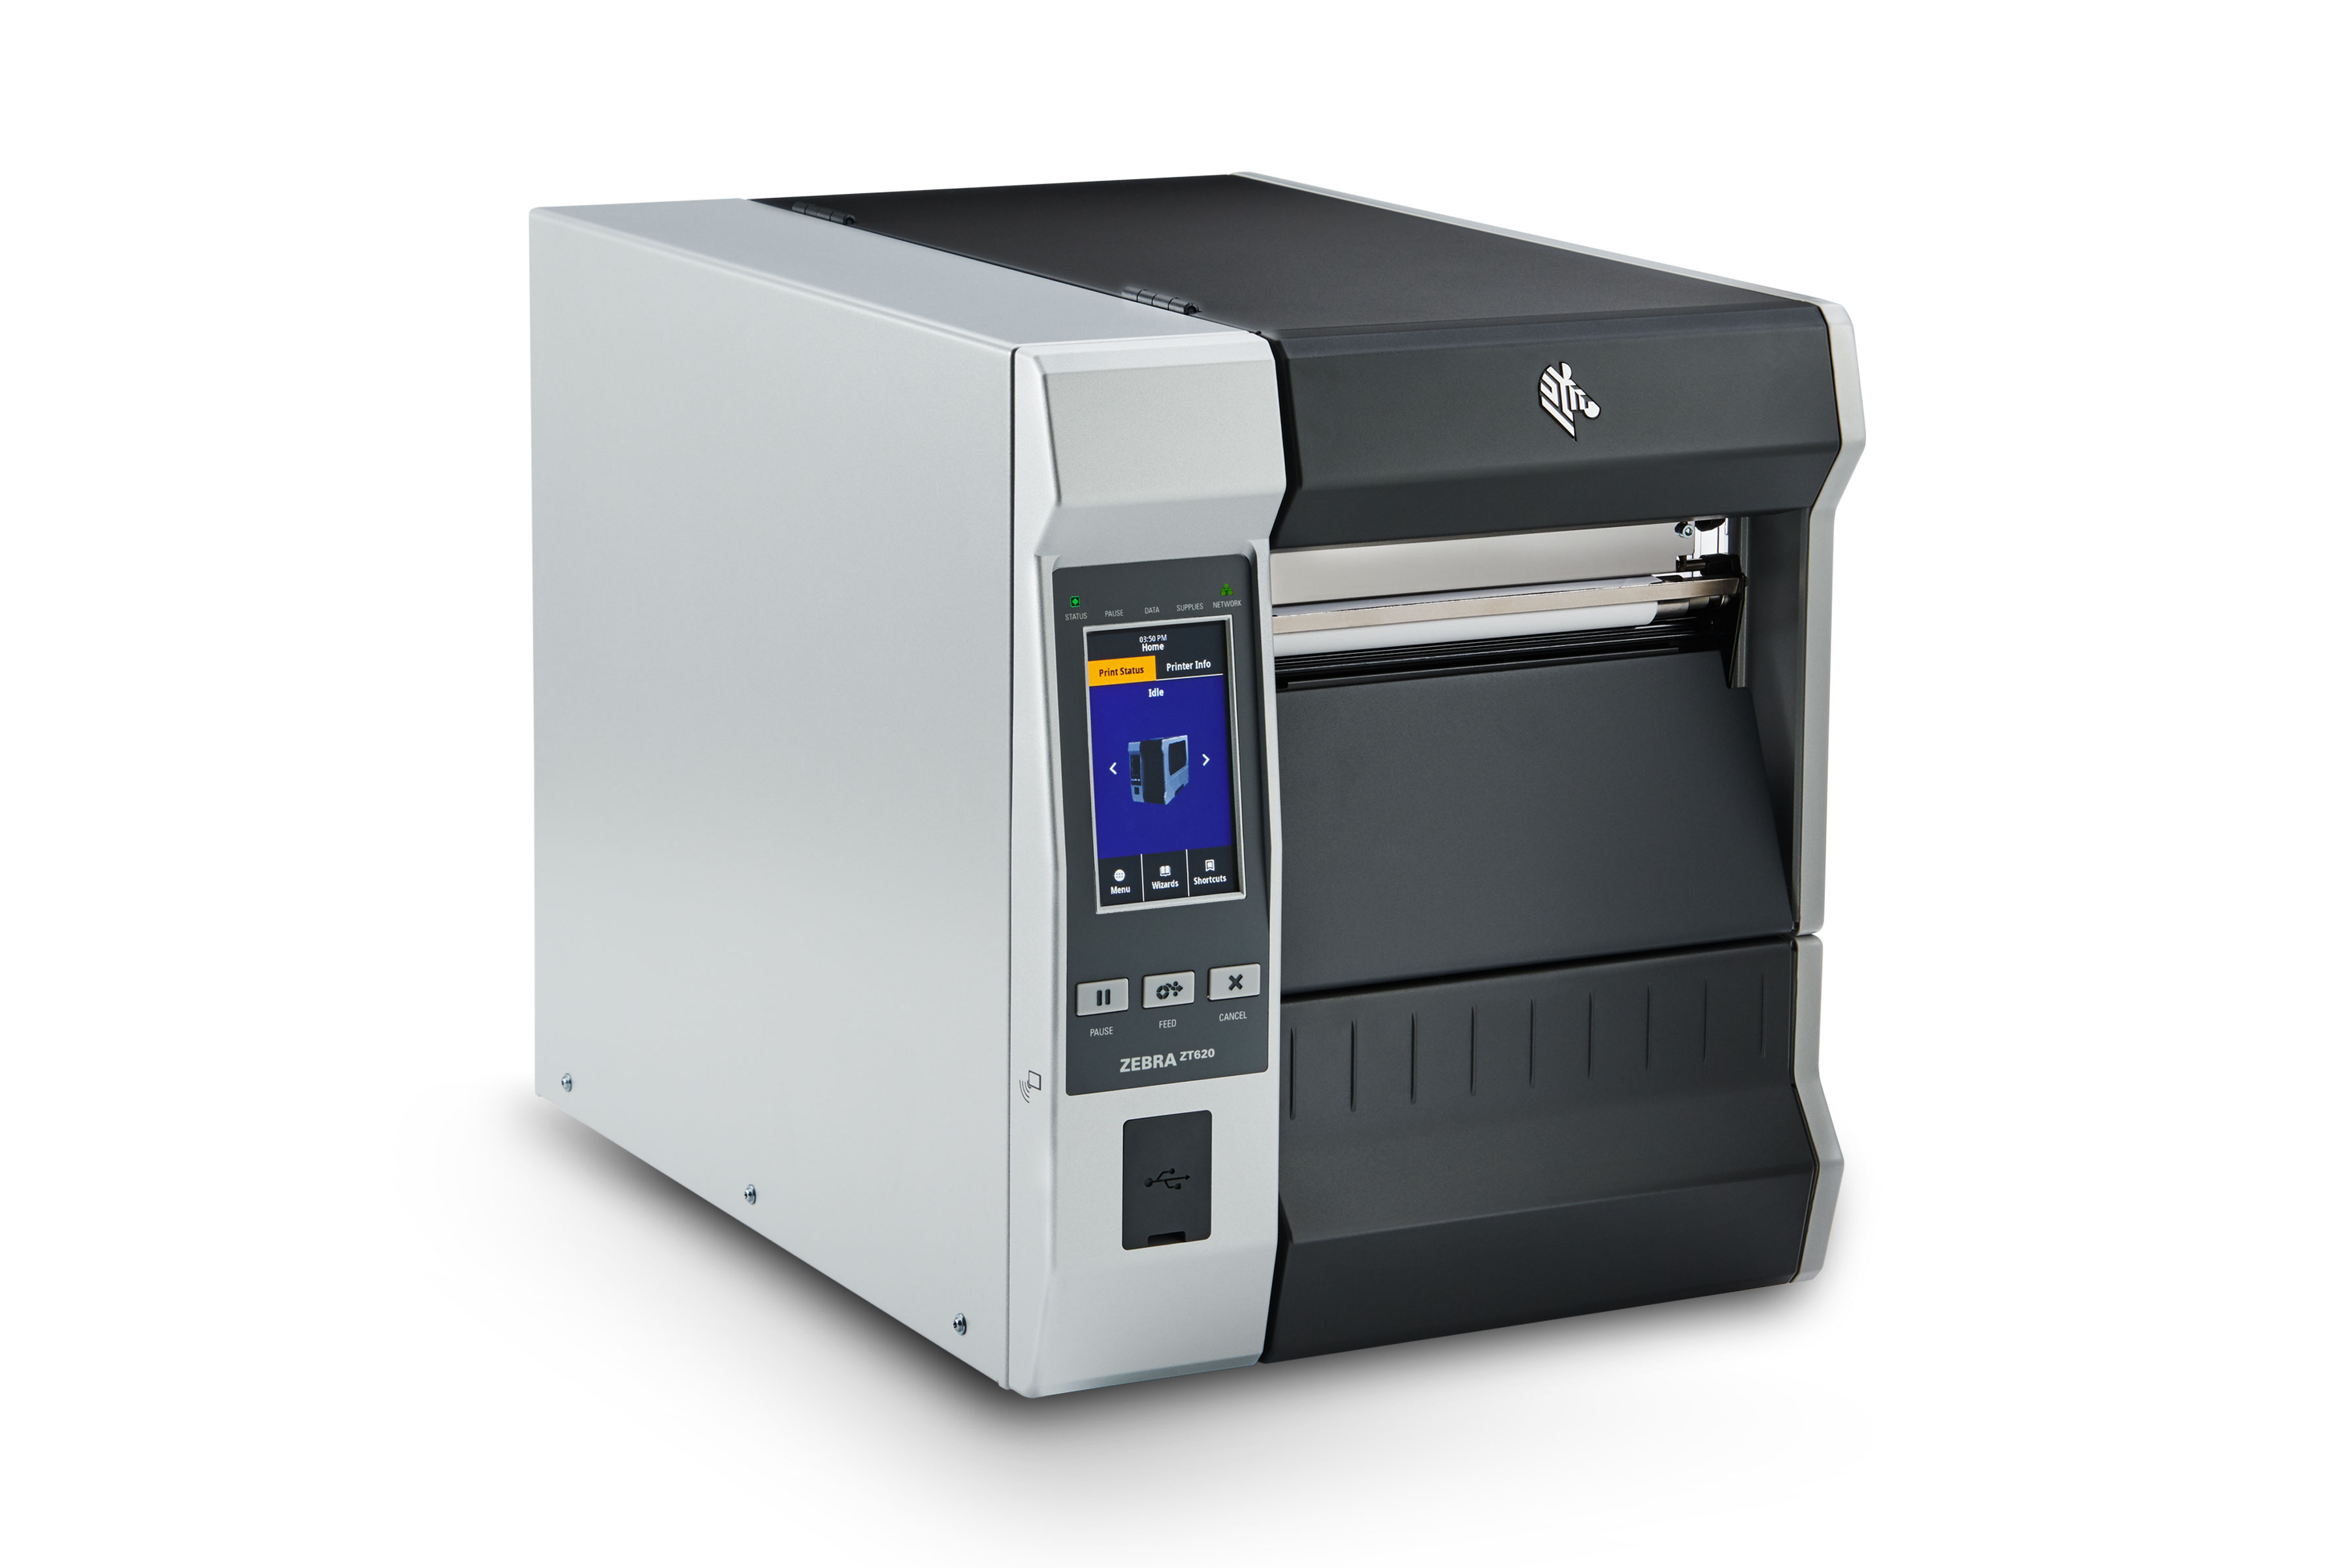 Zebra ZT620 RFID industrial printer